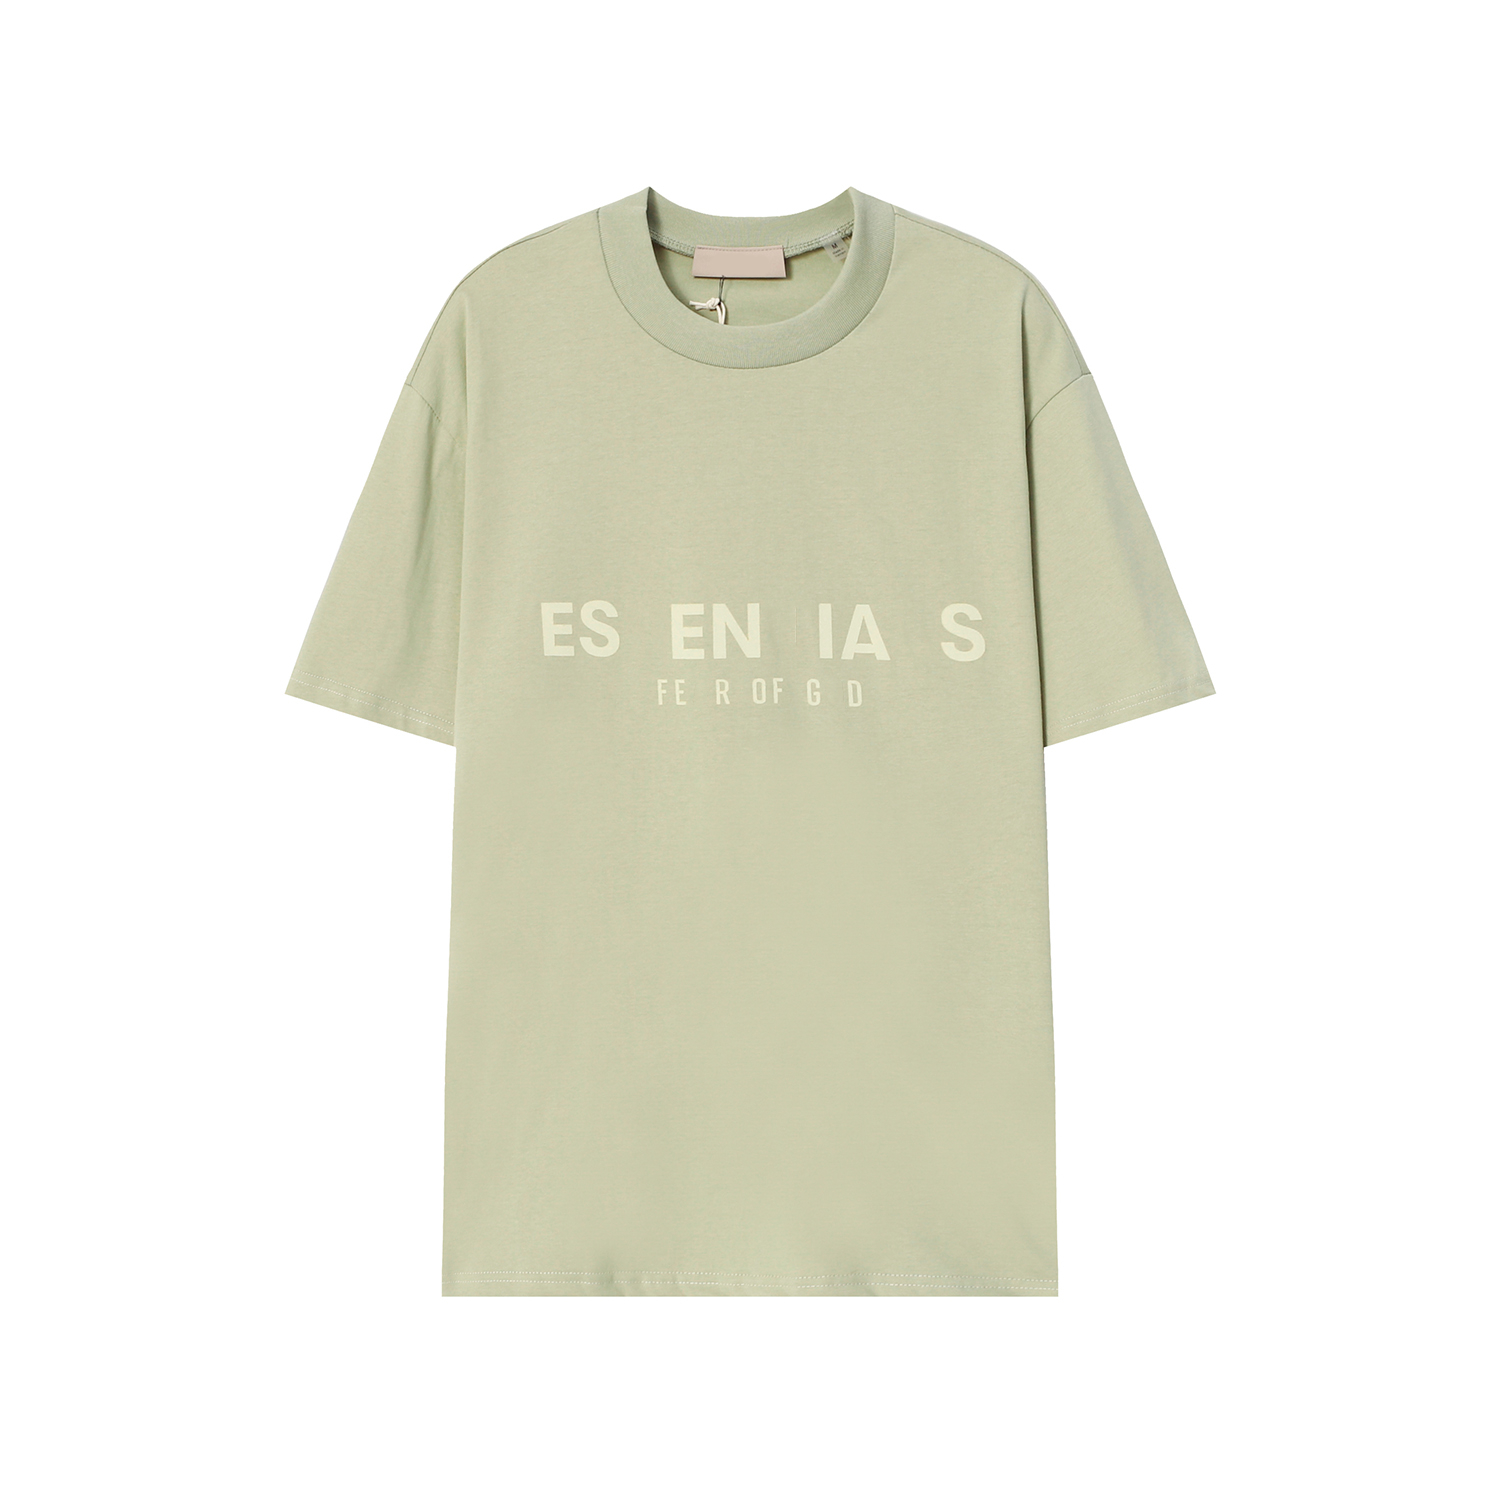 Essentialsweatshirts Partager Jouer Mode Hommes T-shirts Designer Chemise Casual Tshirt Coton Broderie À Manches Courtes T-shirt D'été 584